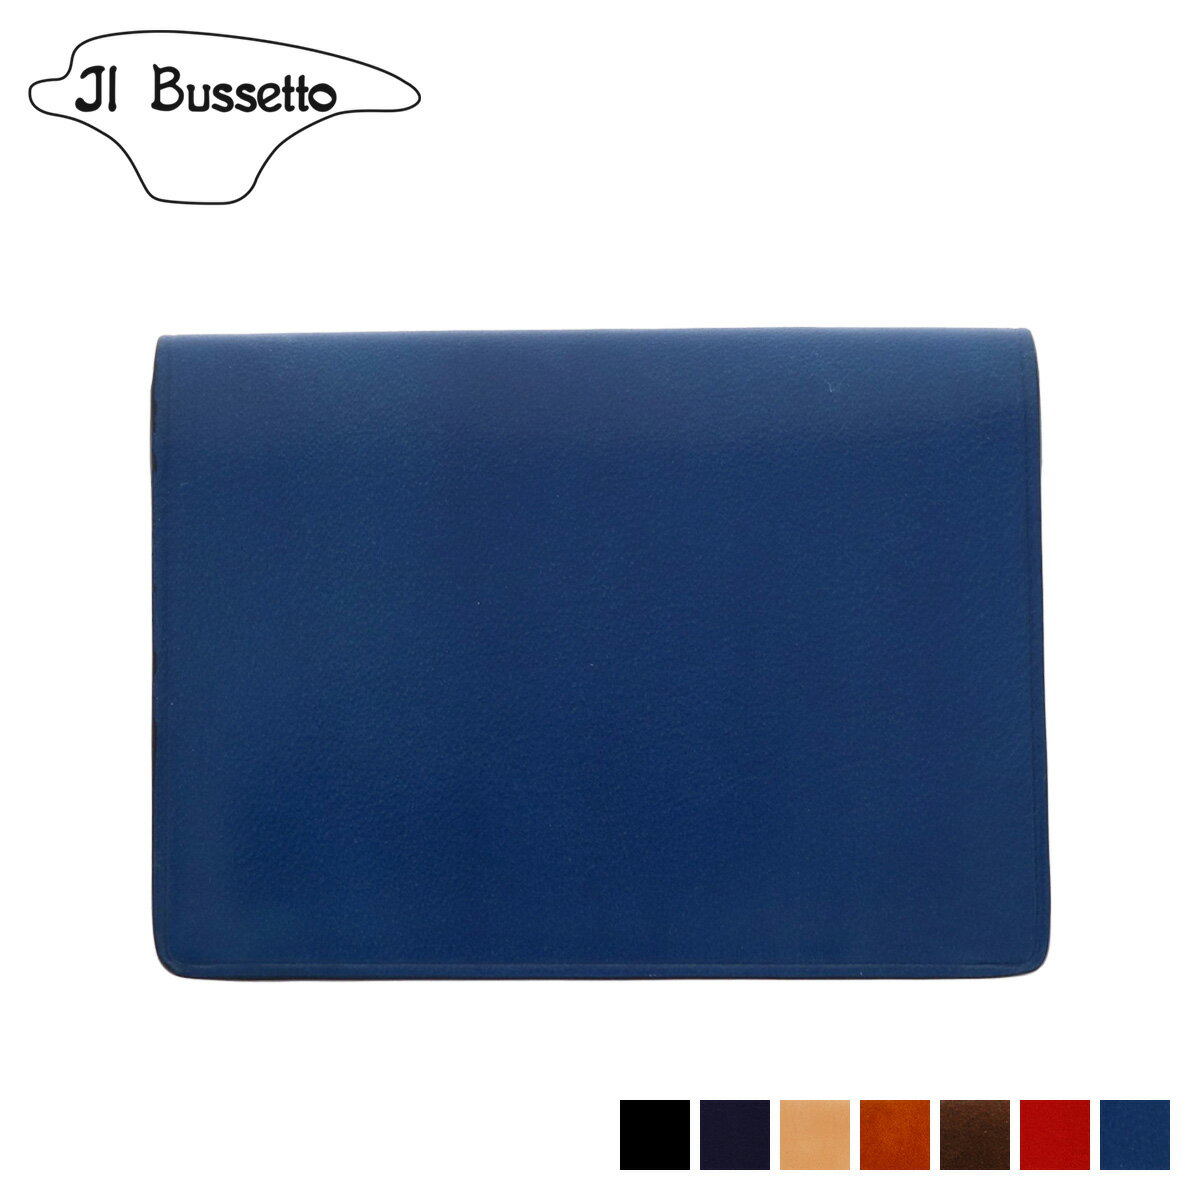 Il Bussetto イルブセット 名刺入れ カードケース パスケース メンズ レディース 本革 CARD CASE ブラック ネイビー ナチュラル ブラウン ダークブラウン レッド ブルー 黒 781511